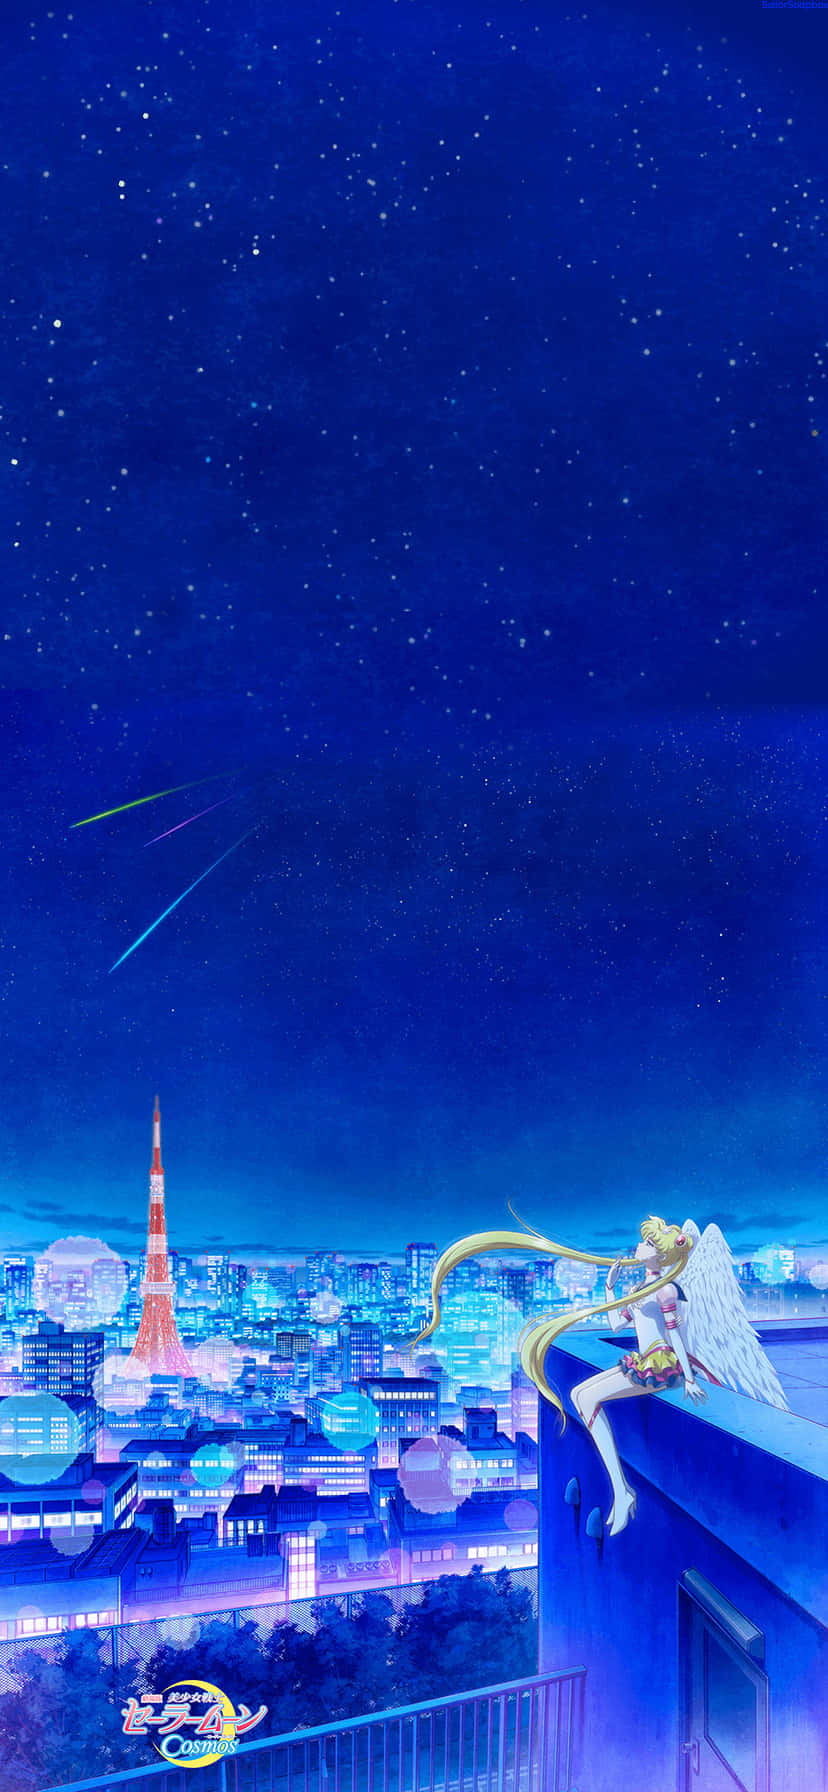 Usagi Tsukino, the Sailor Moon, Protecting the Earth